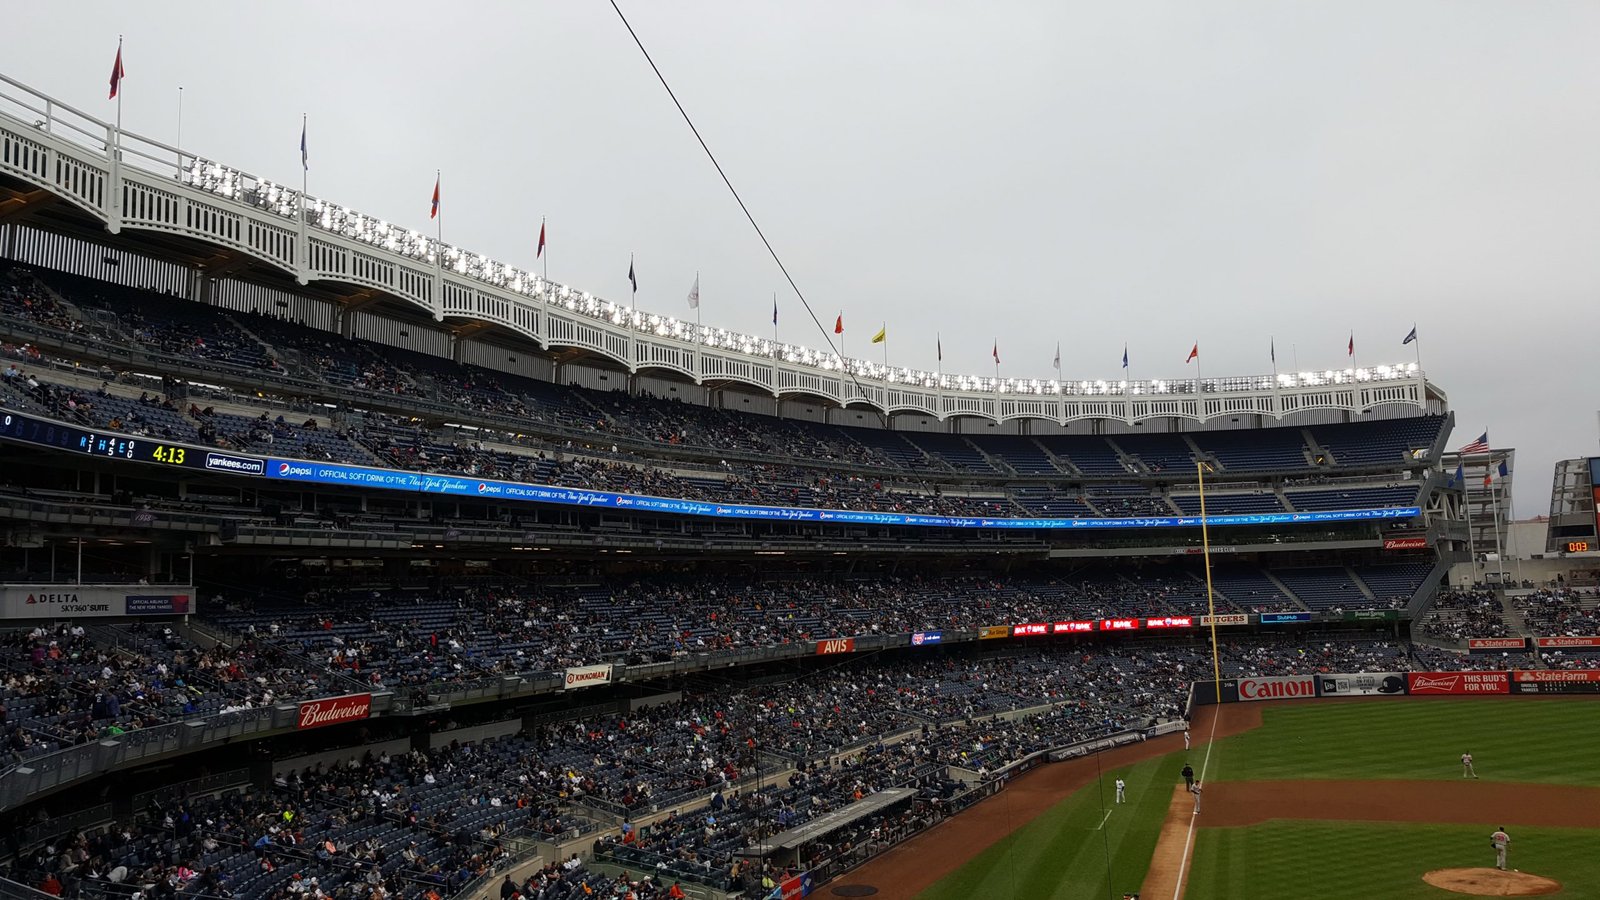 Yankee Stadium — Sports Stadium Review